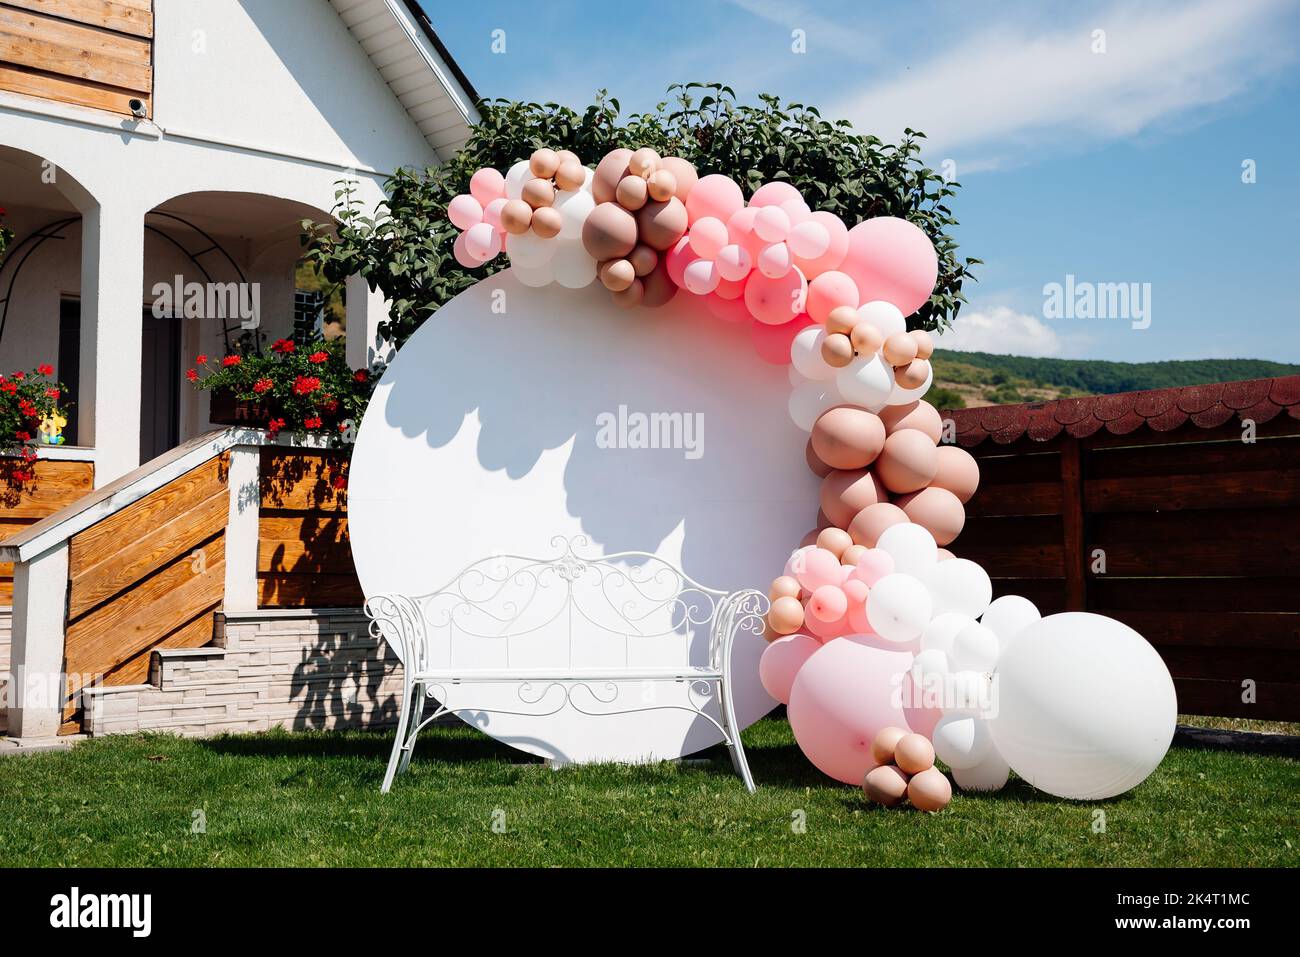 Uno striscione con palloncini rosa e bianchi in giardino per una